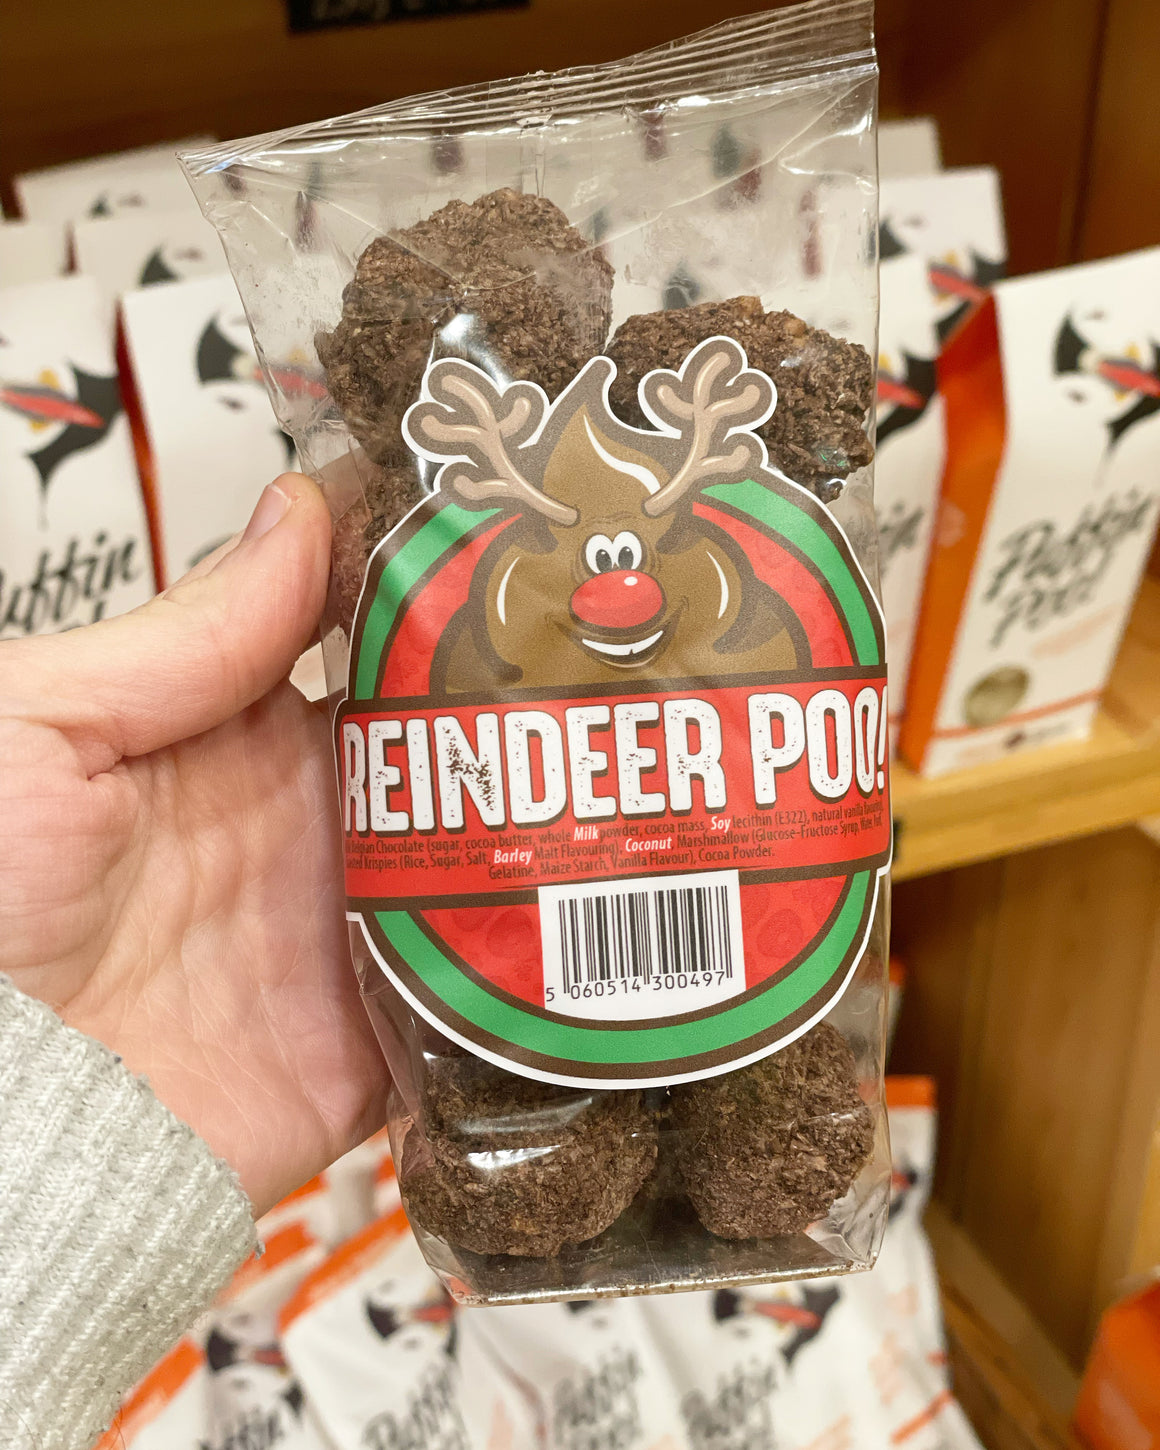 Reindeer Poo!